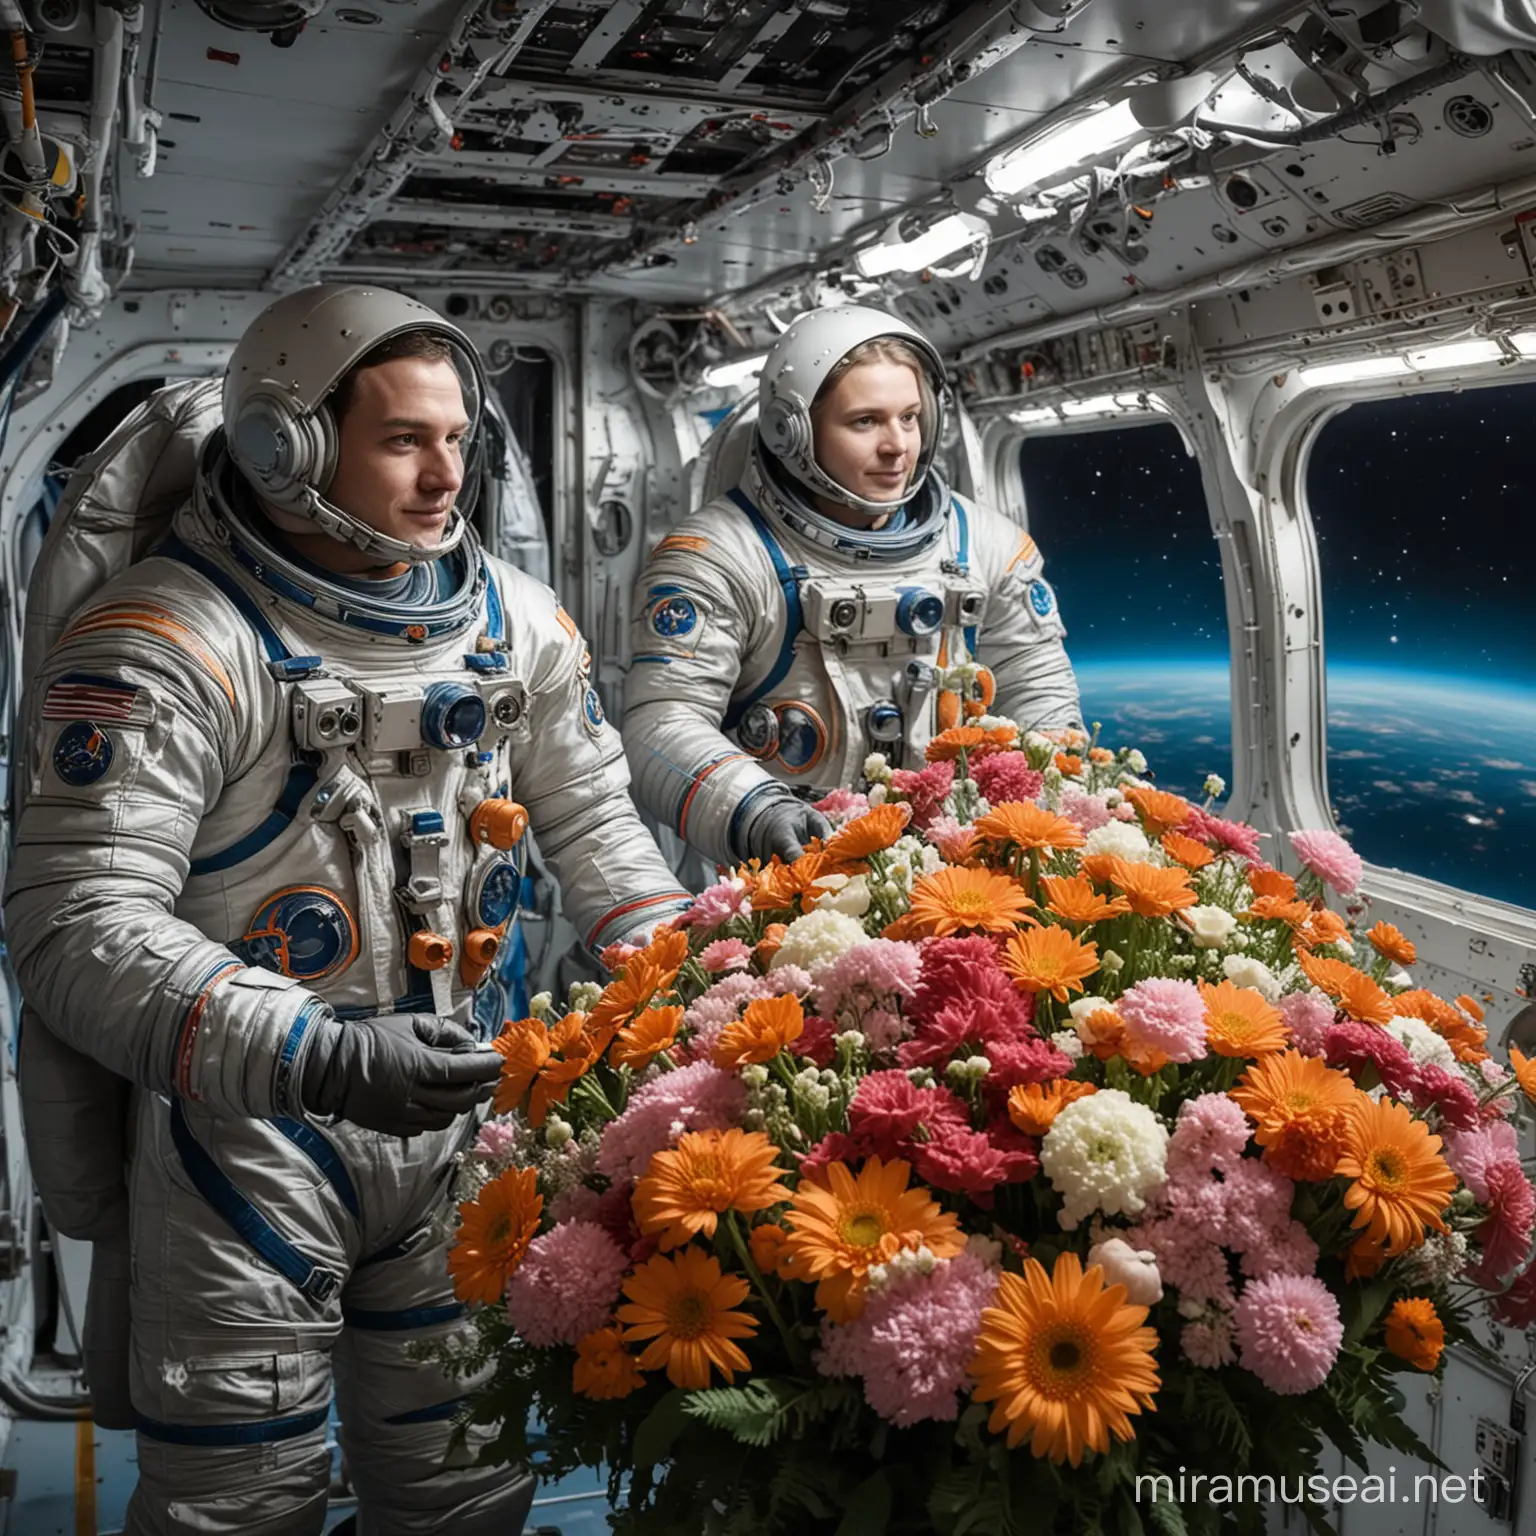 Живые космонавты стоят в космосе на корабле с букетами цветов 